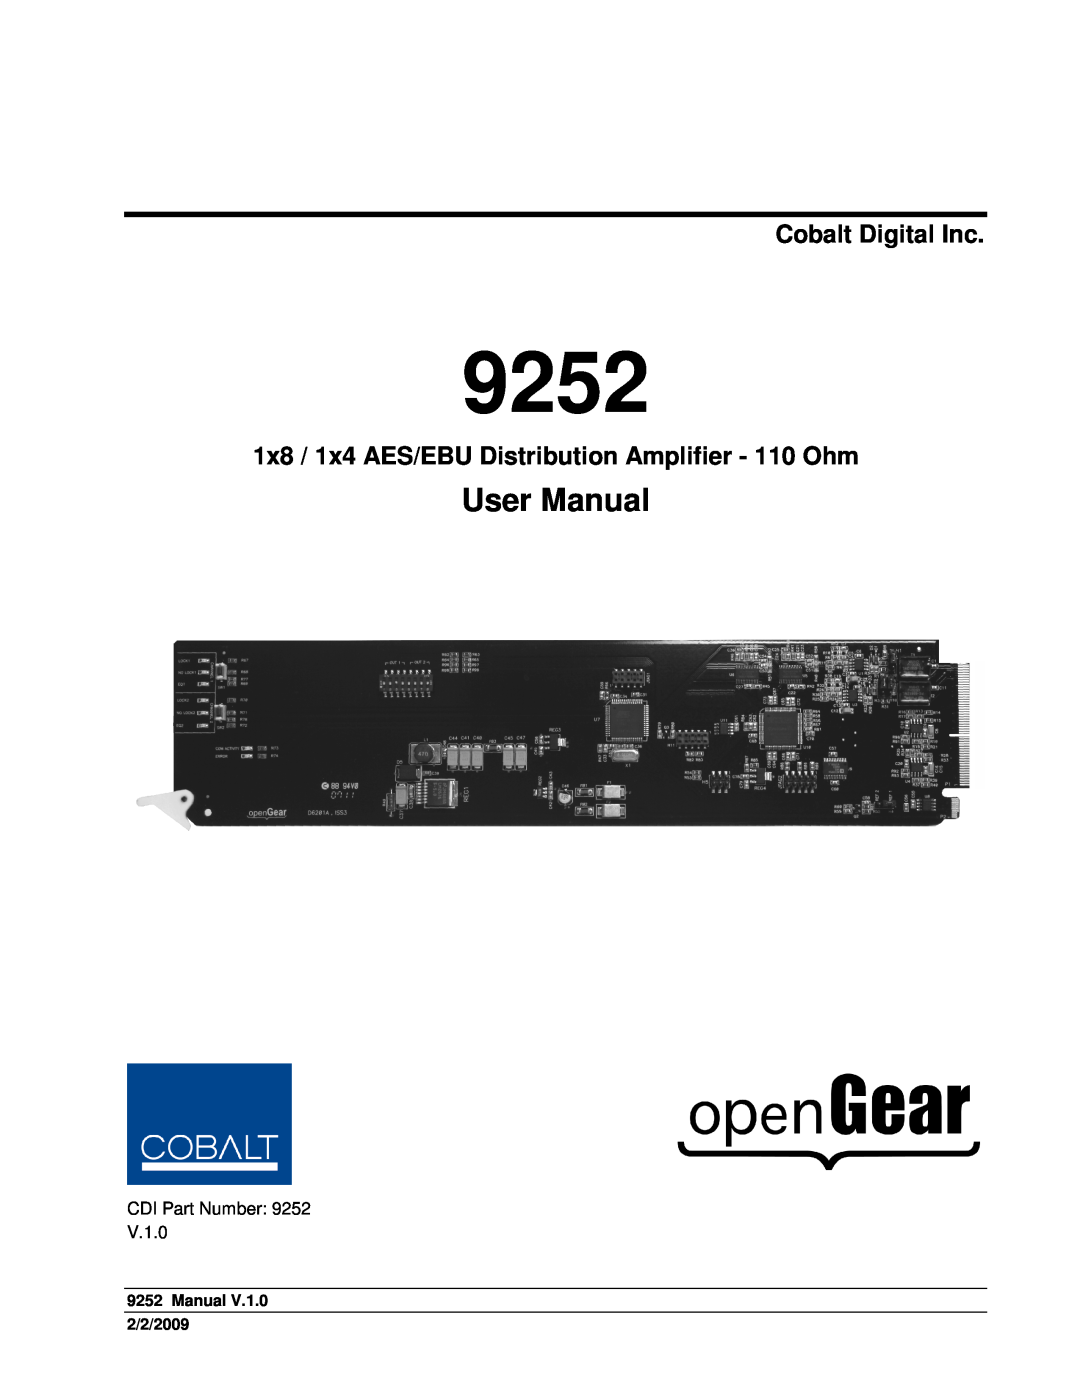 Cobalt Networks 9252 user manual Cobalt Digital Inc, Manual 2/2/2009 